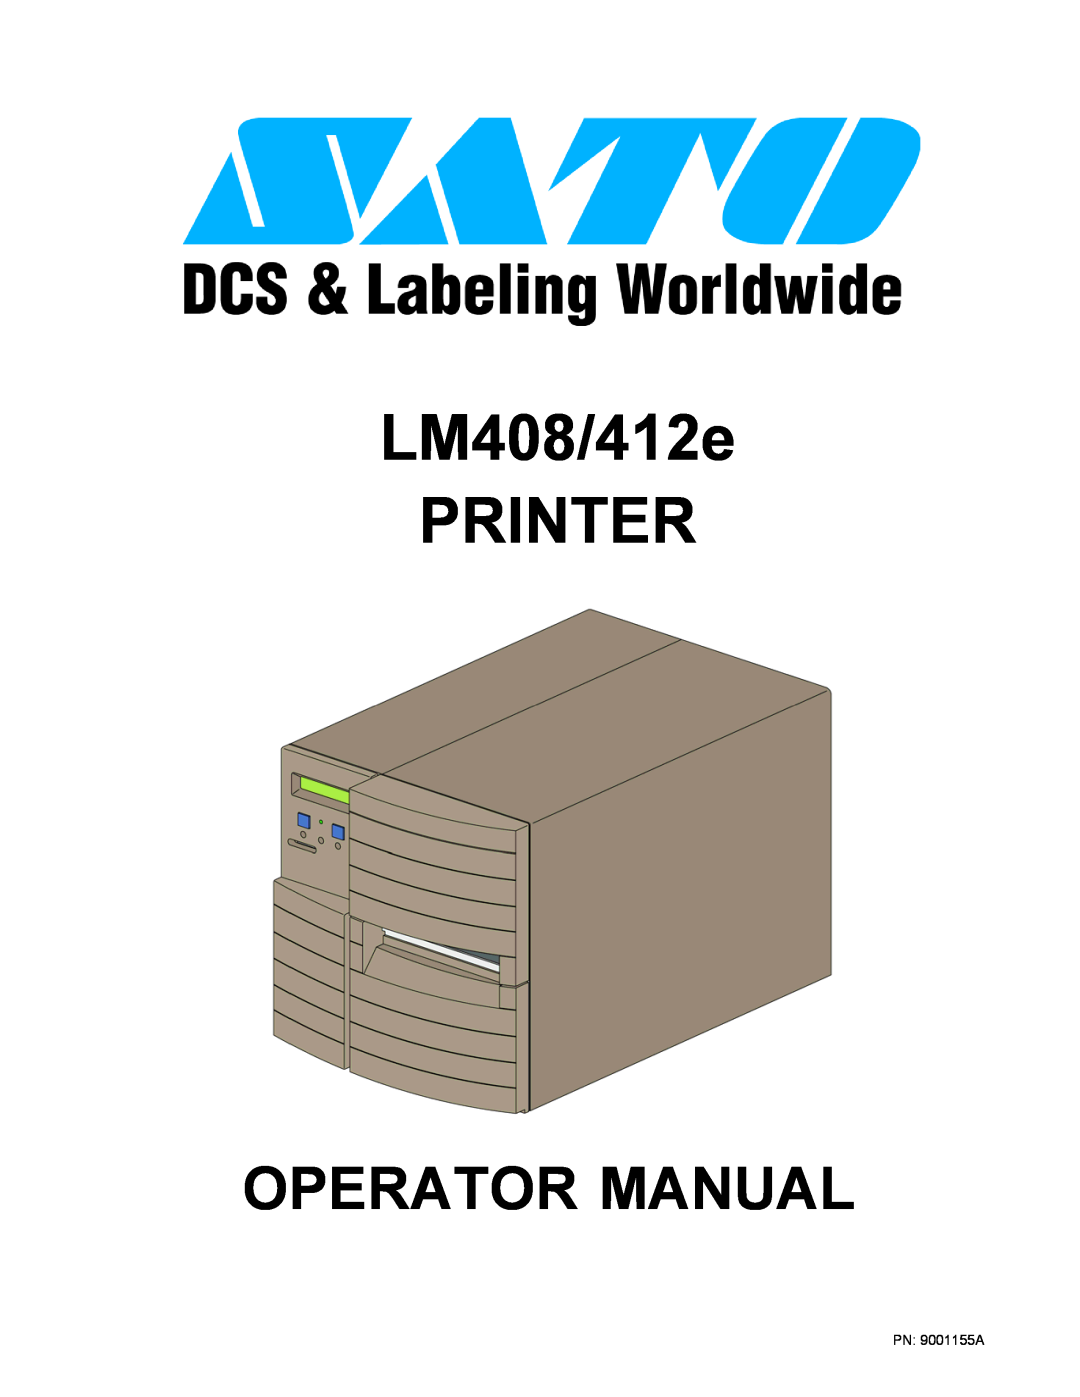 SATO LM408/412E manual LM408/412e PRINTER, Operator Manual 